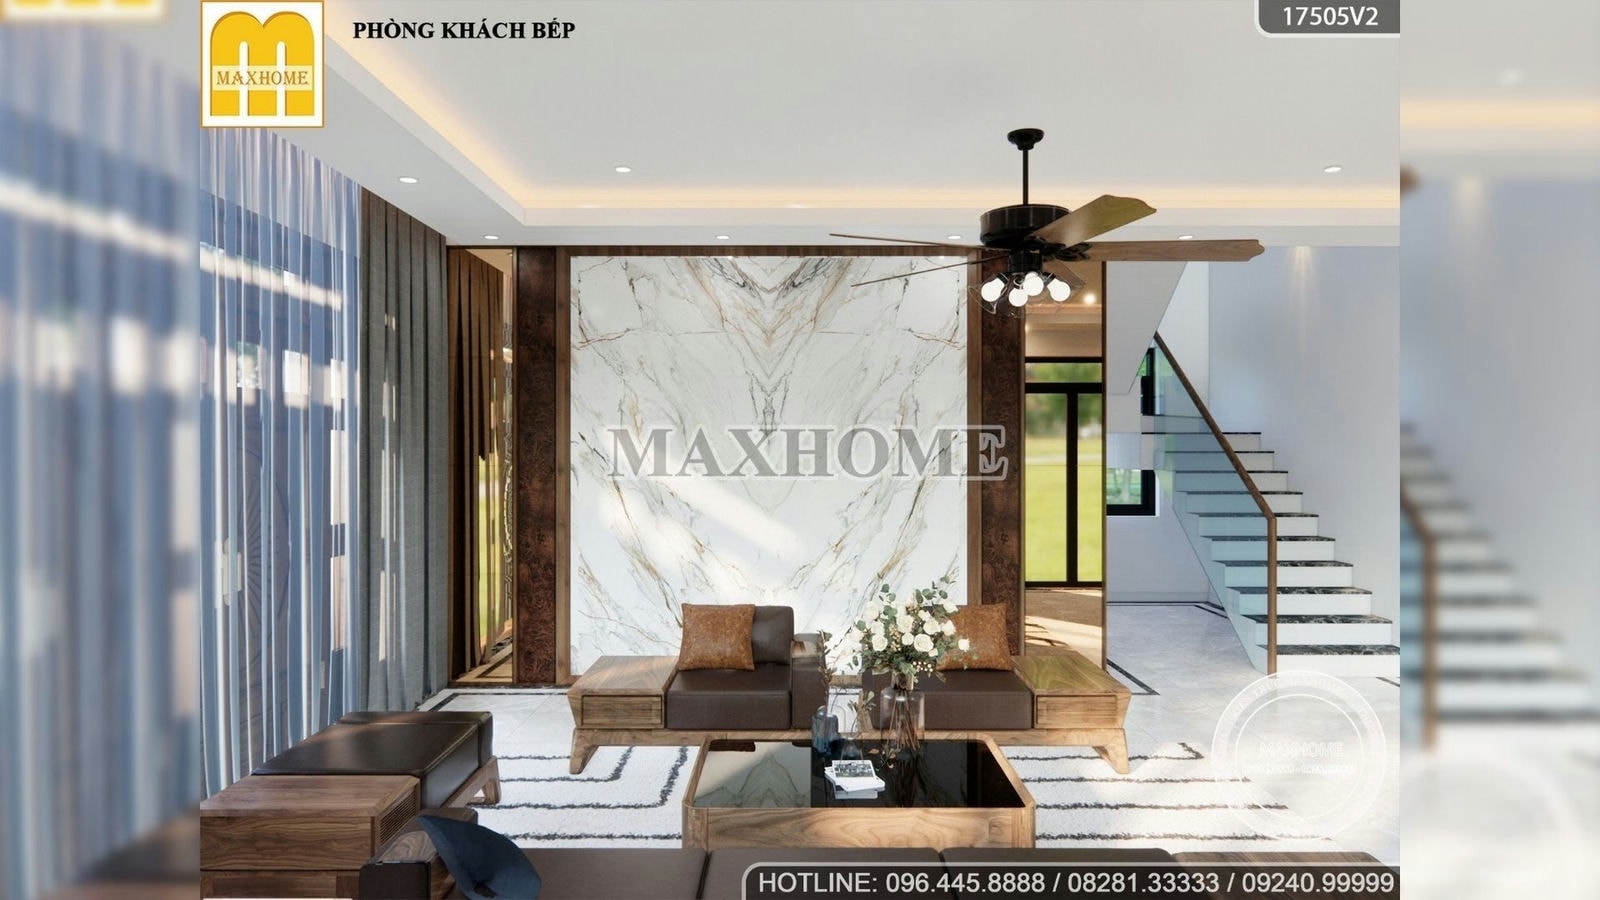 Full bản thiết kế nội thất cho nhà vườn 2 tầng 5 phòng ngủ | MH01989